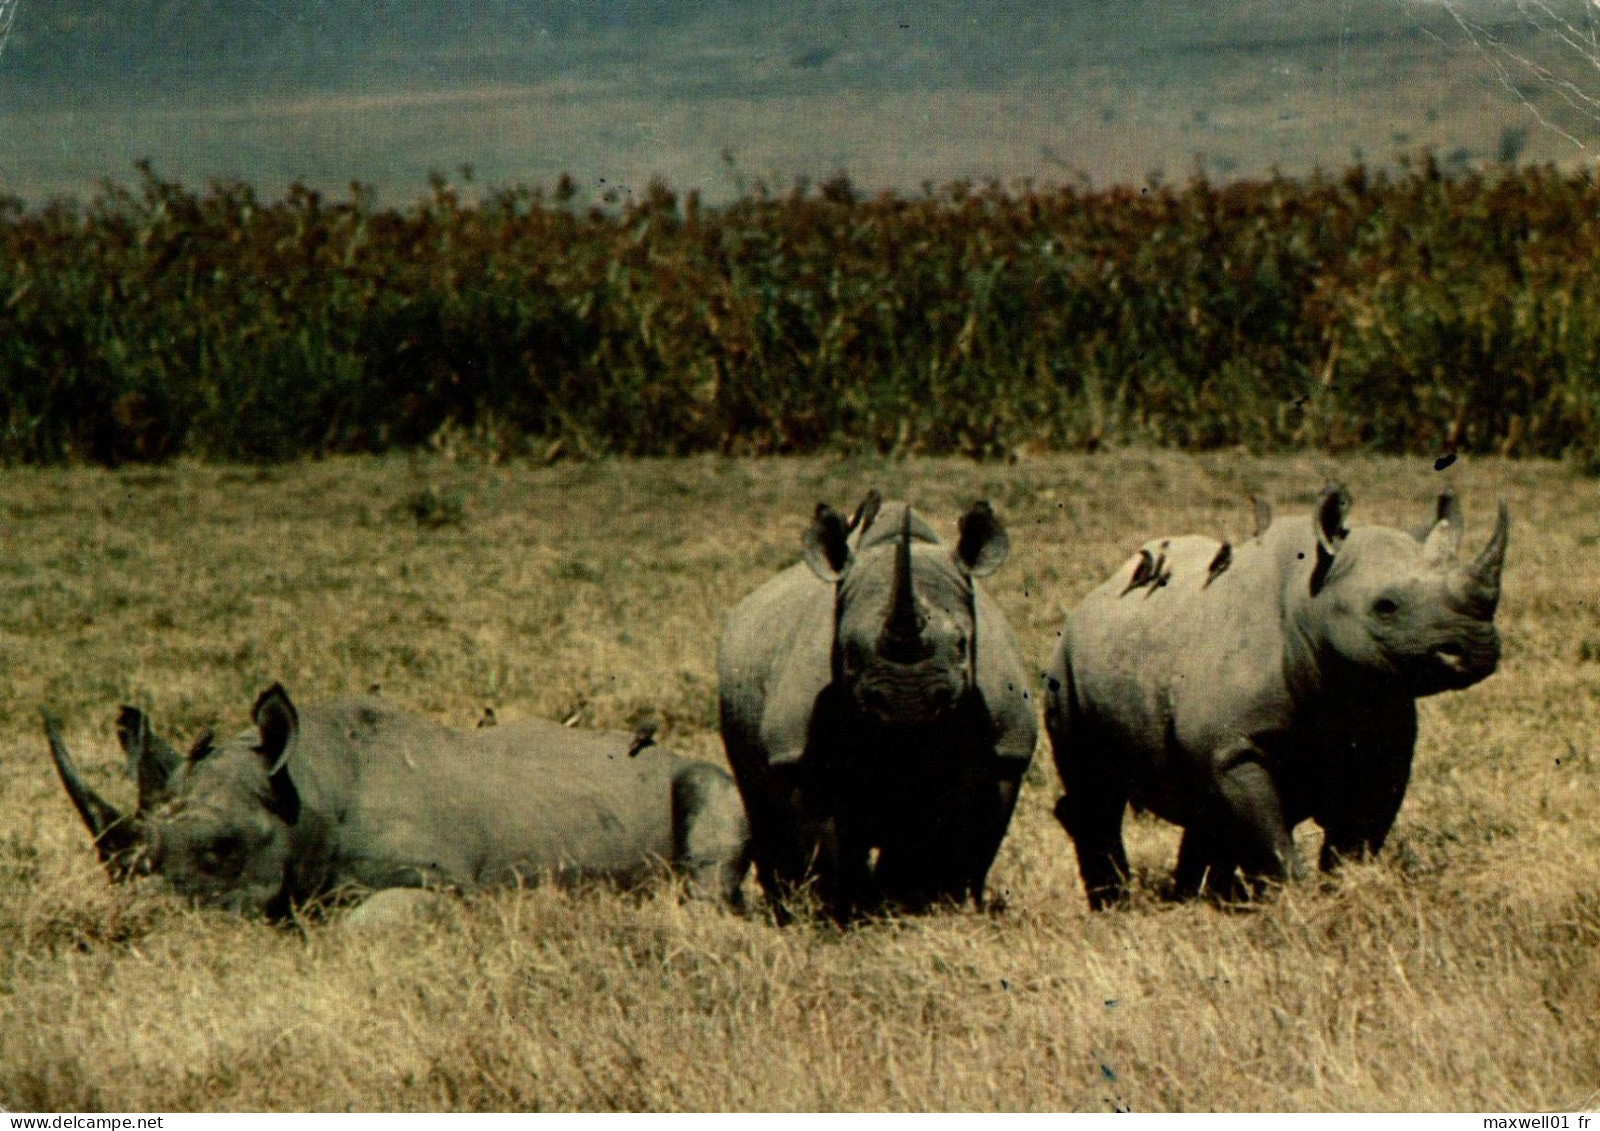 K9 - Carte Postale Animaux - Rhinocéros - Neushoorn